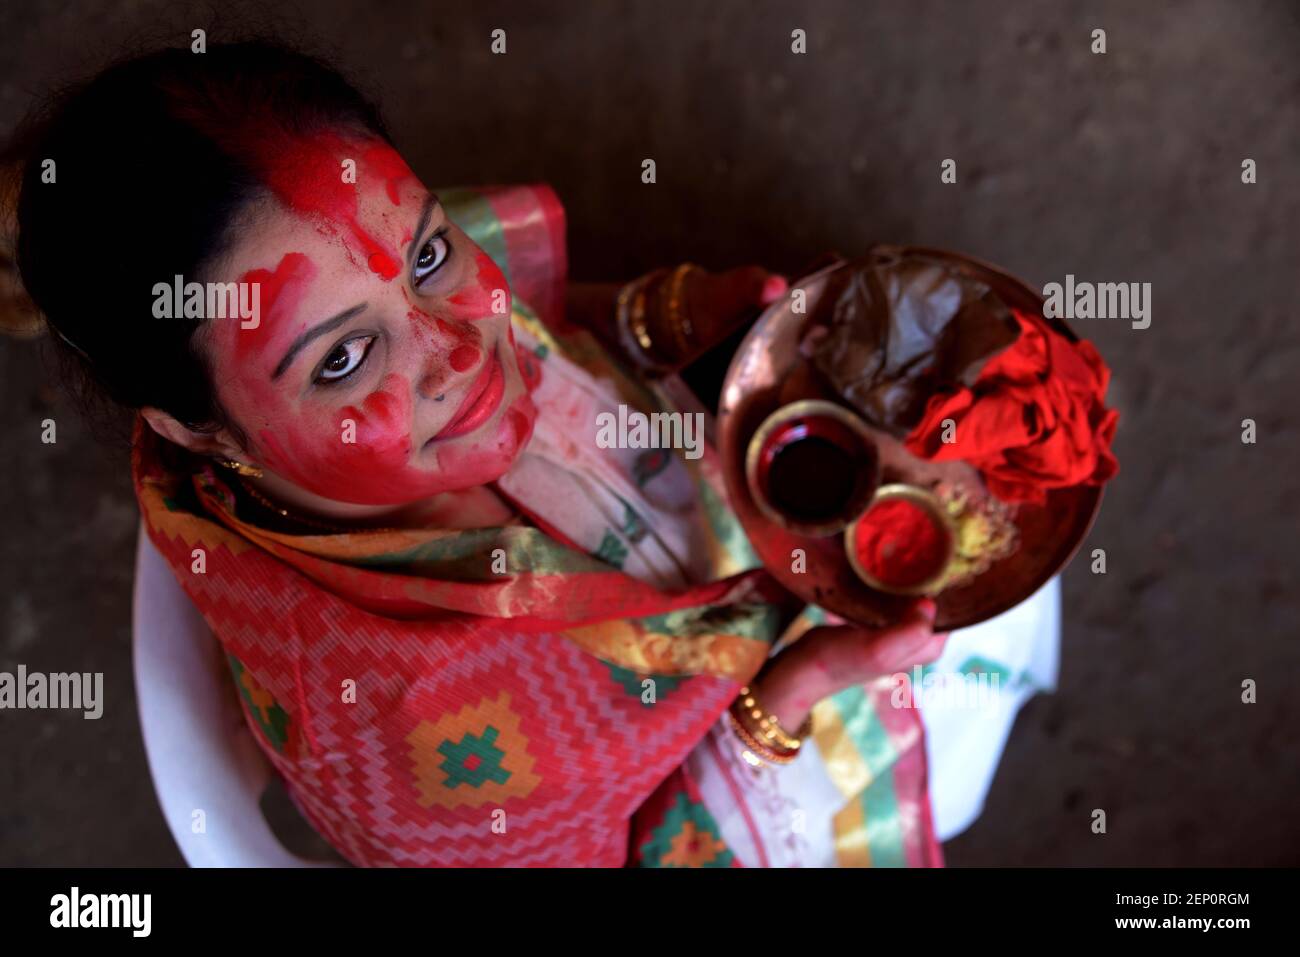 Una mujer reacciona a la cámara mientras descansa después de tomar parte en la Procesión de 'Sindhur Khela' antes de sumergir el Idol de la Diosa Durga en un estanque con ocasión del Festival VijayDashmi en Allahabad (Prayagraj) el martes, 08 de octubre de 2019. Foto de stock